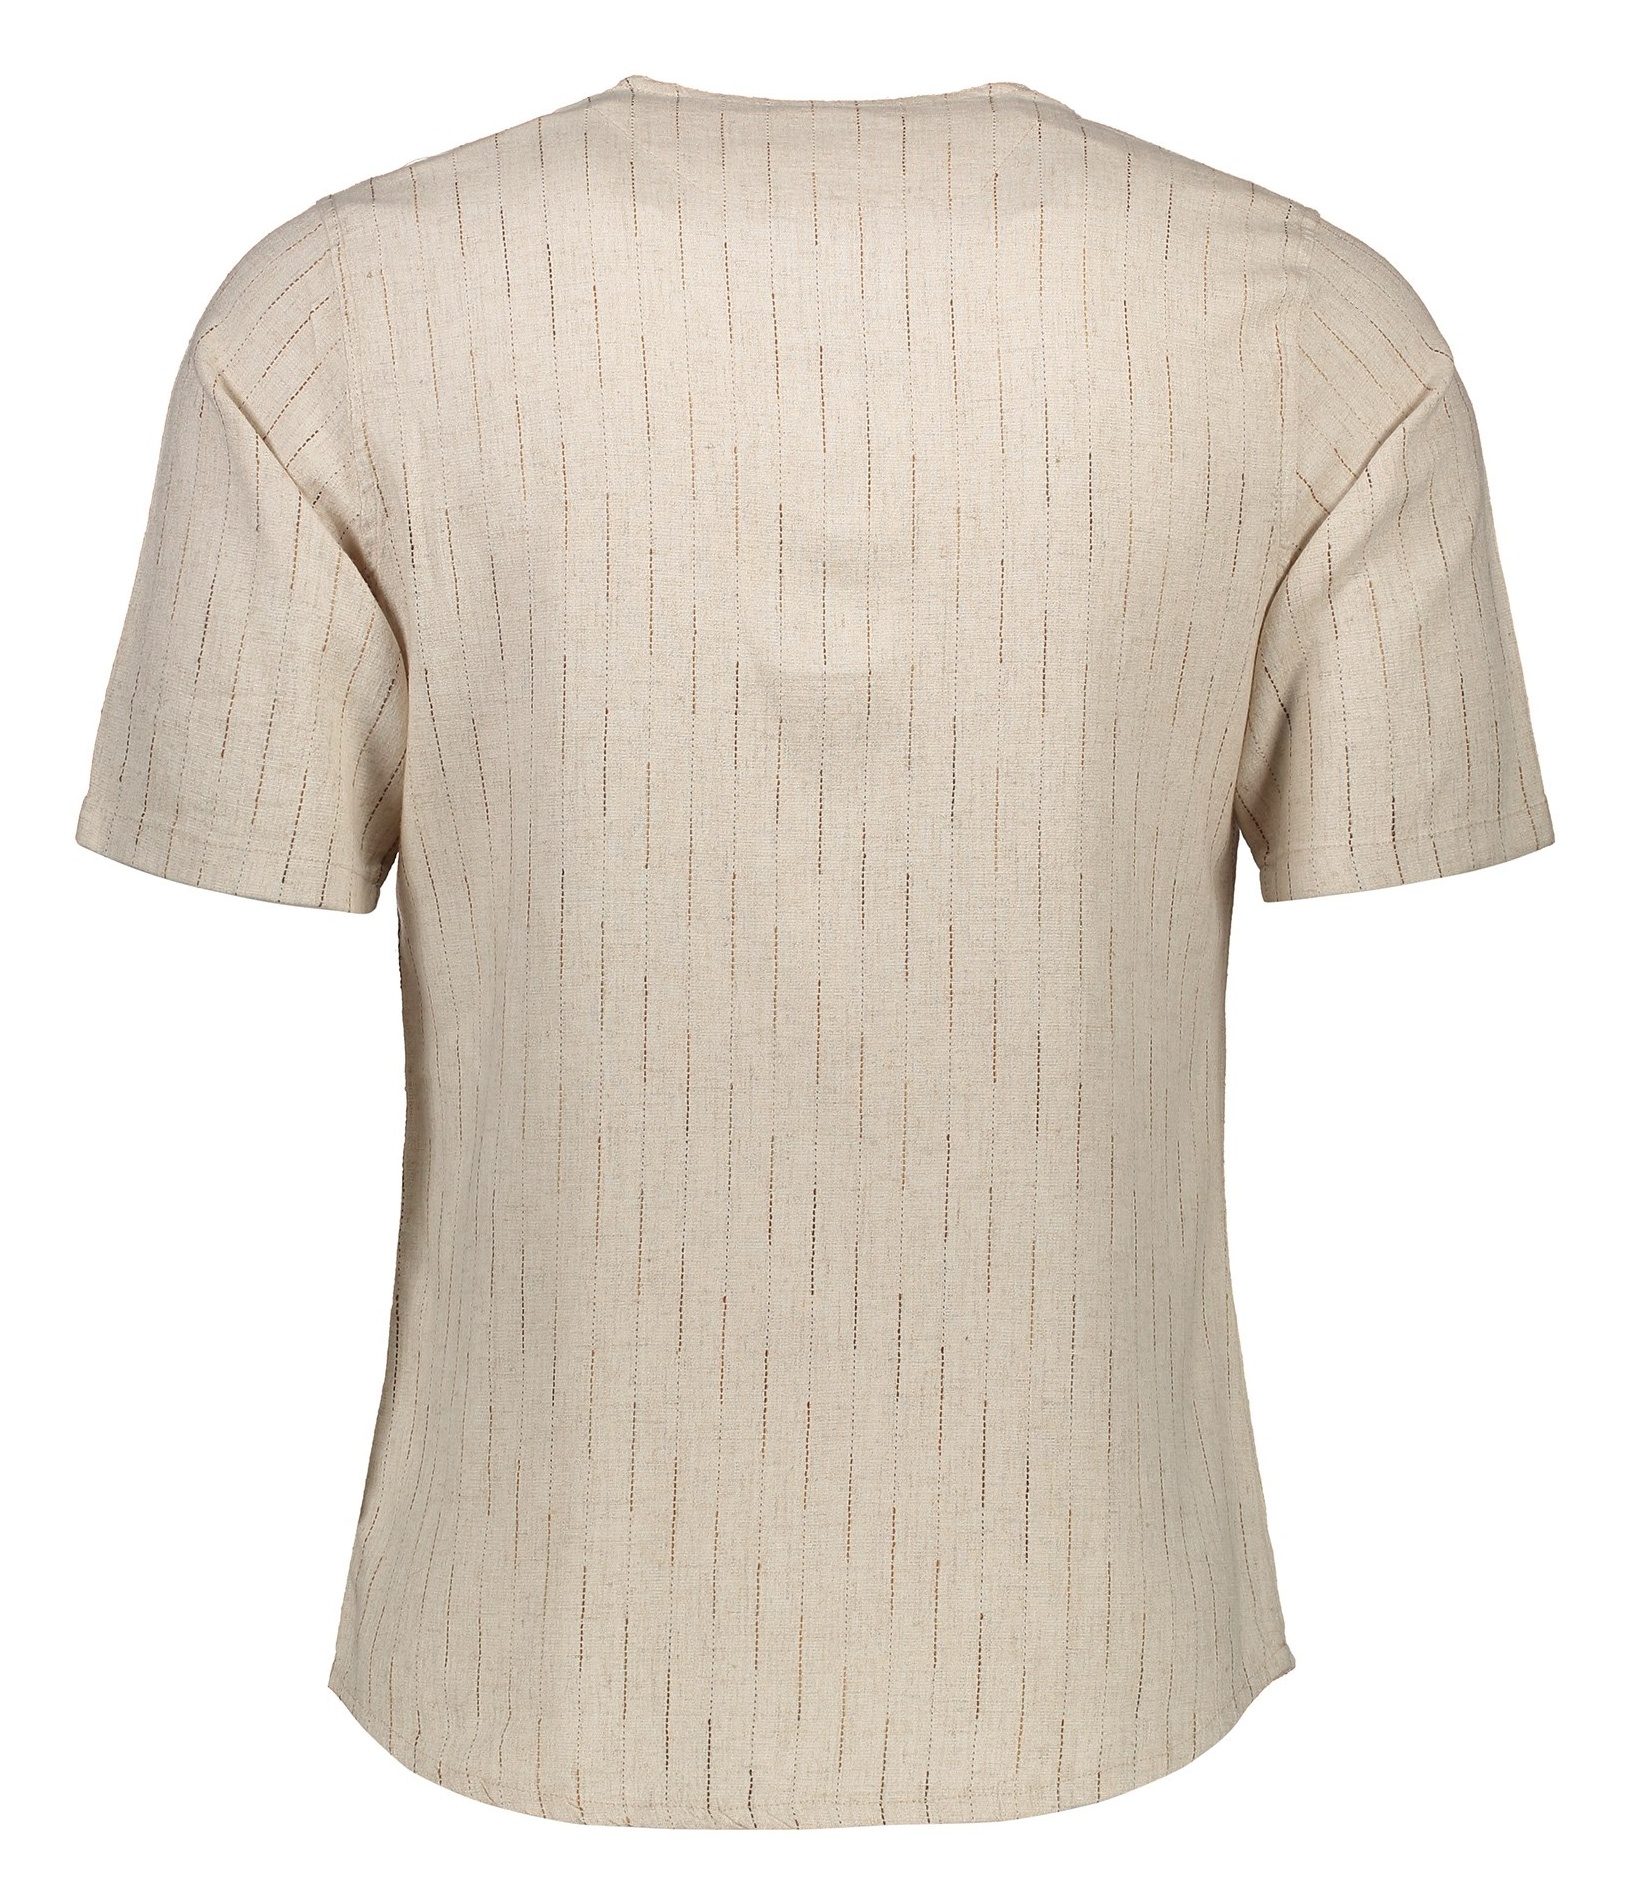 پیراهن آستین کوتاه مردانه مدل طبری - تن درست - کرم - 3